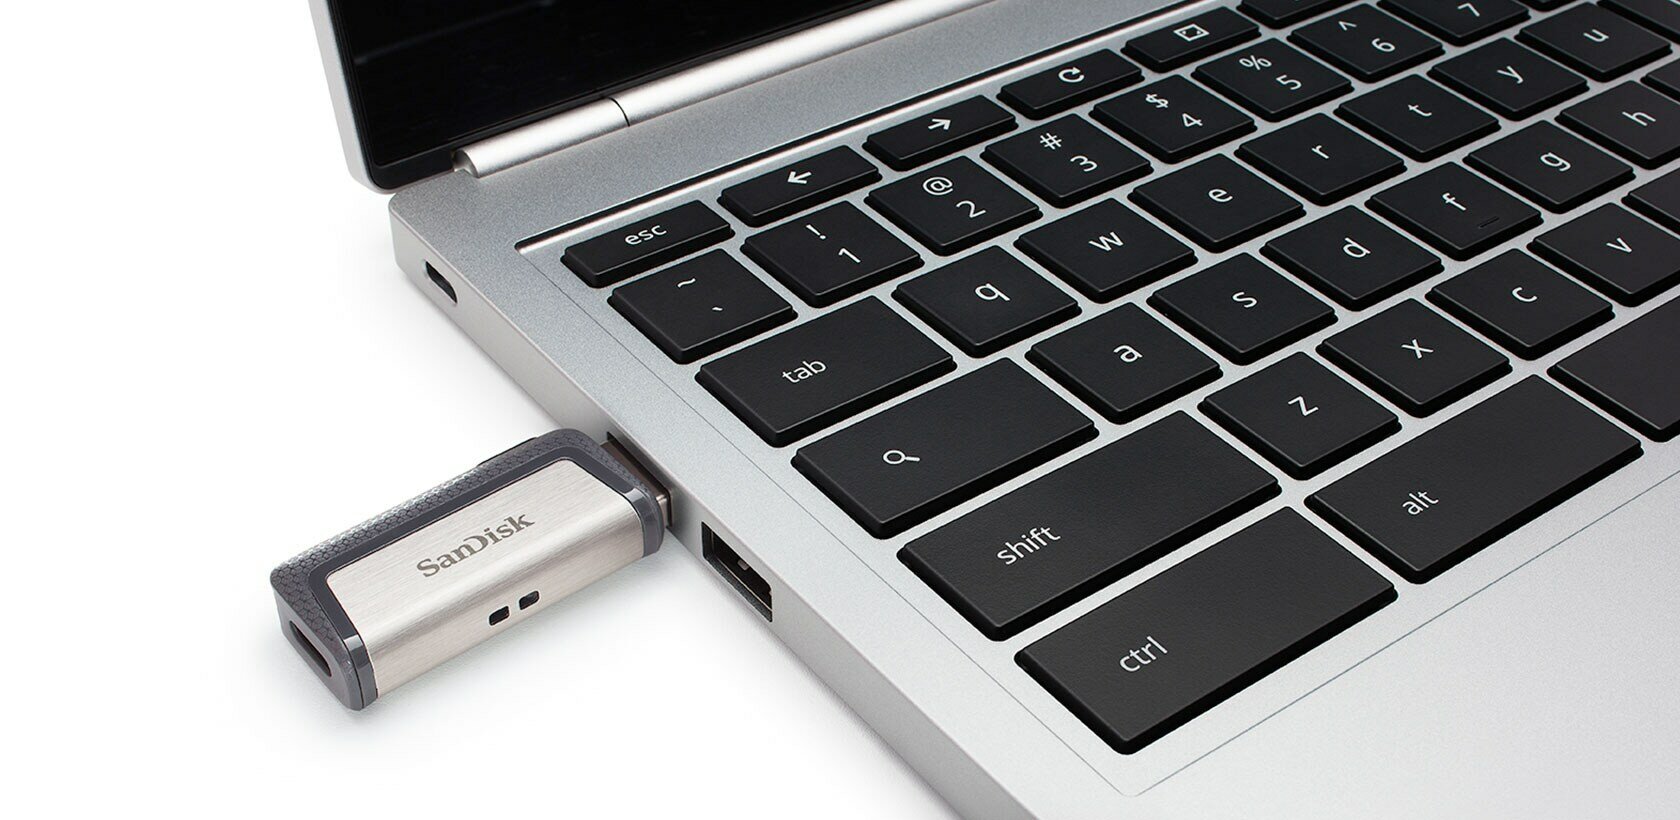 SanDisk Ultra Dual Drive Go - USB flash drive - 128 GB - SDDDC3-128G-G46 -  USB Flash Drives - CDW.ca